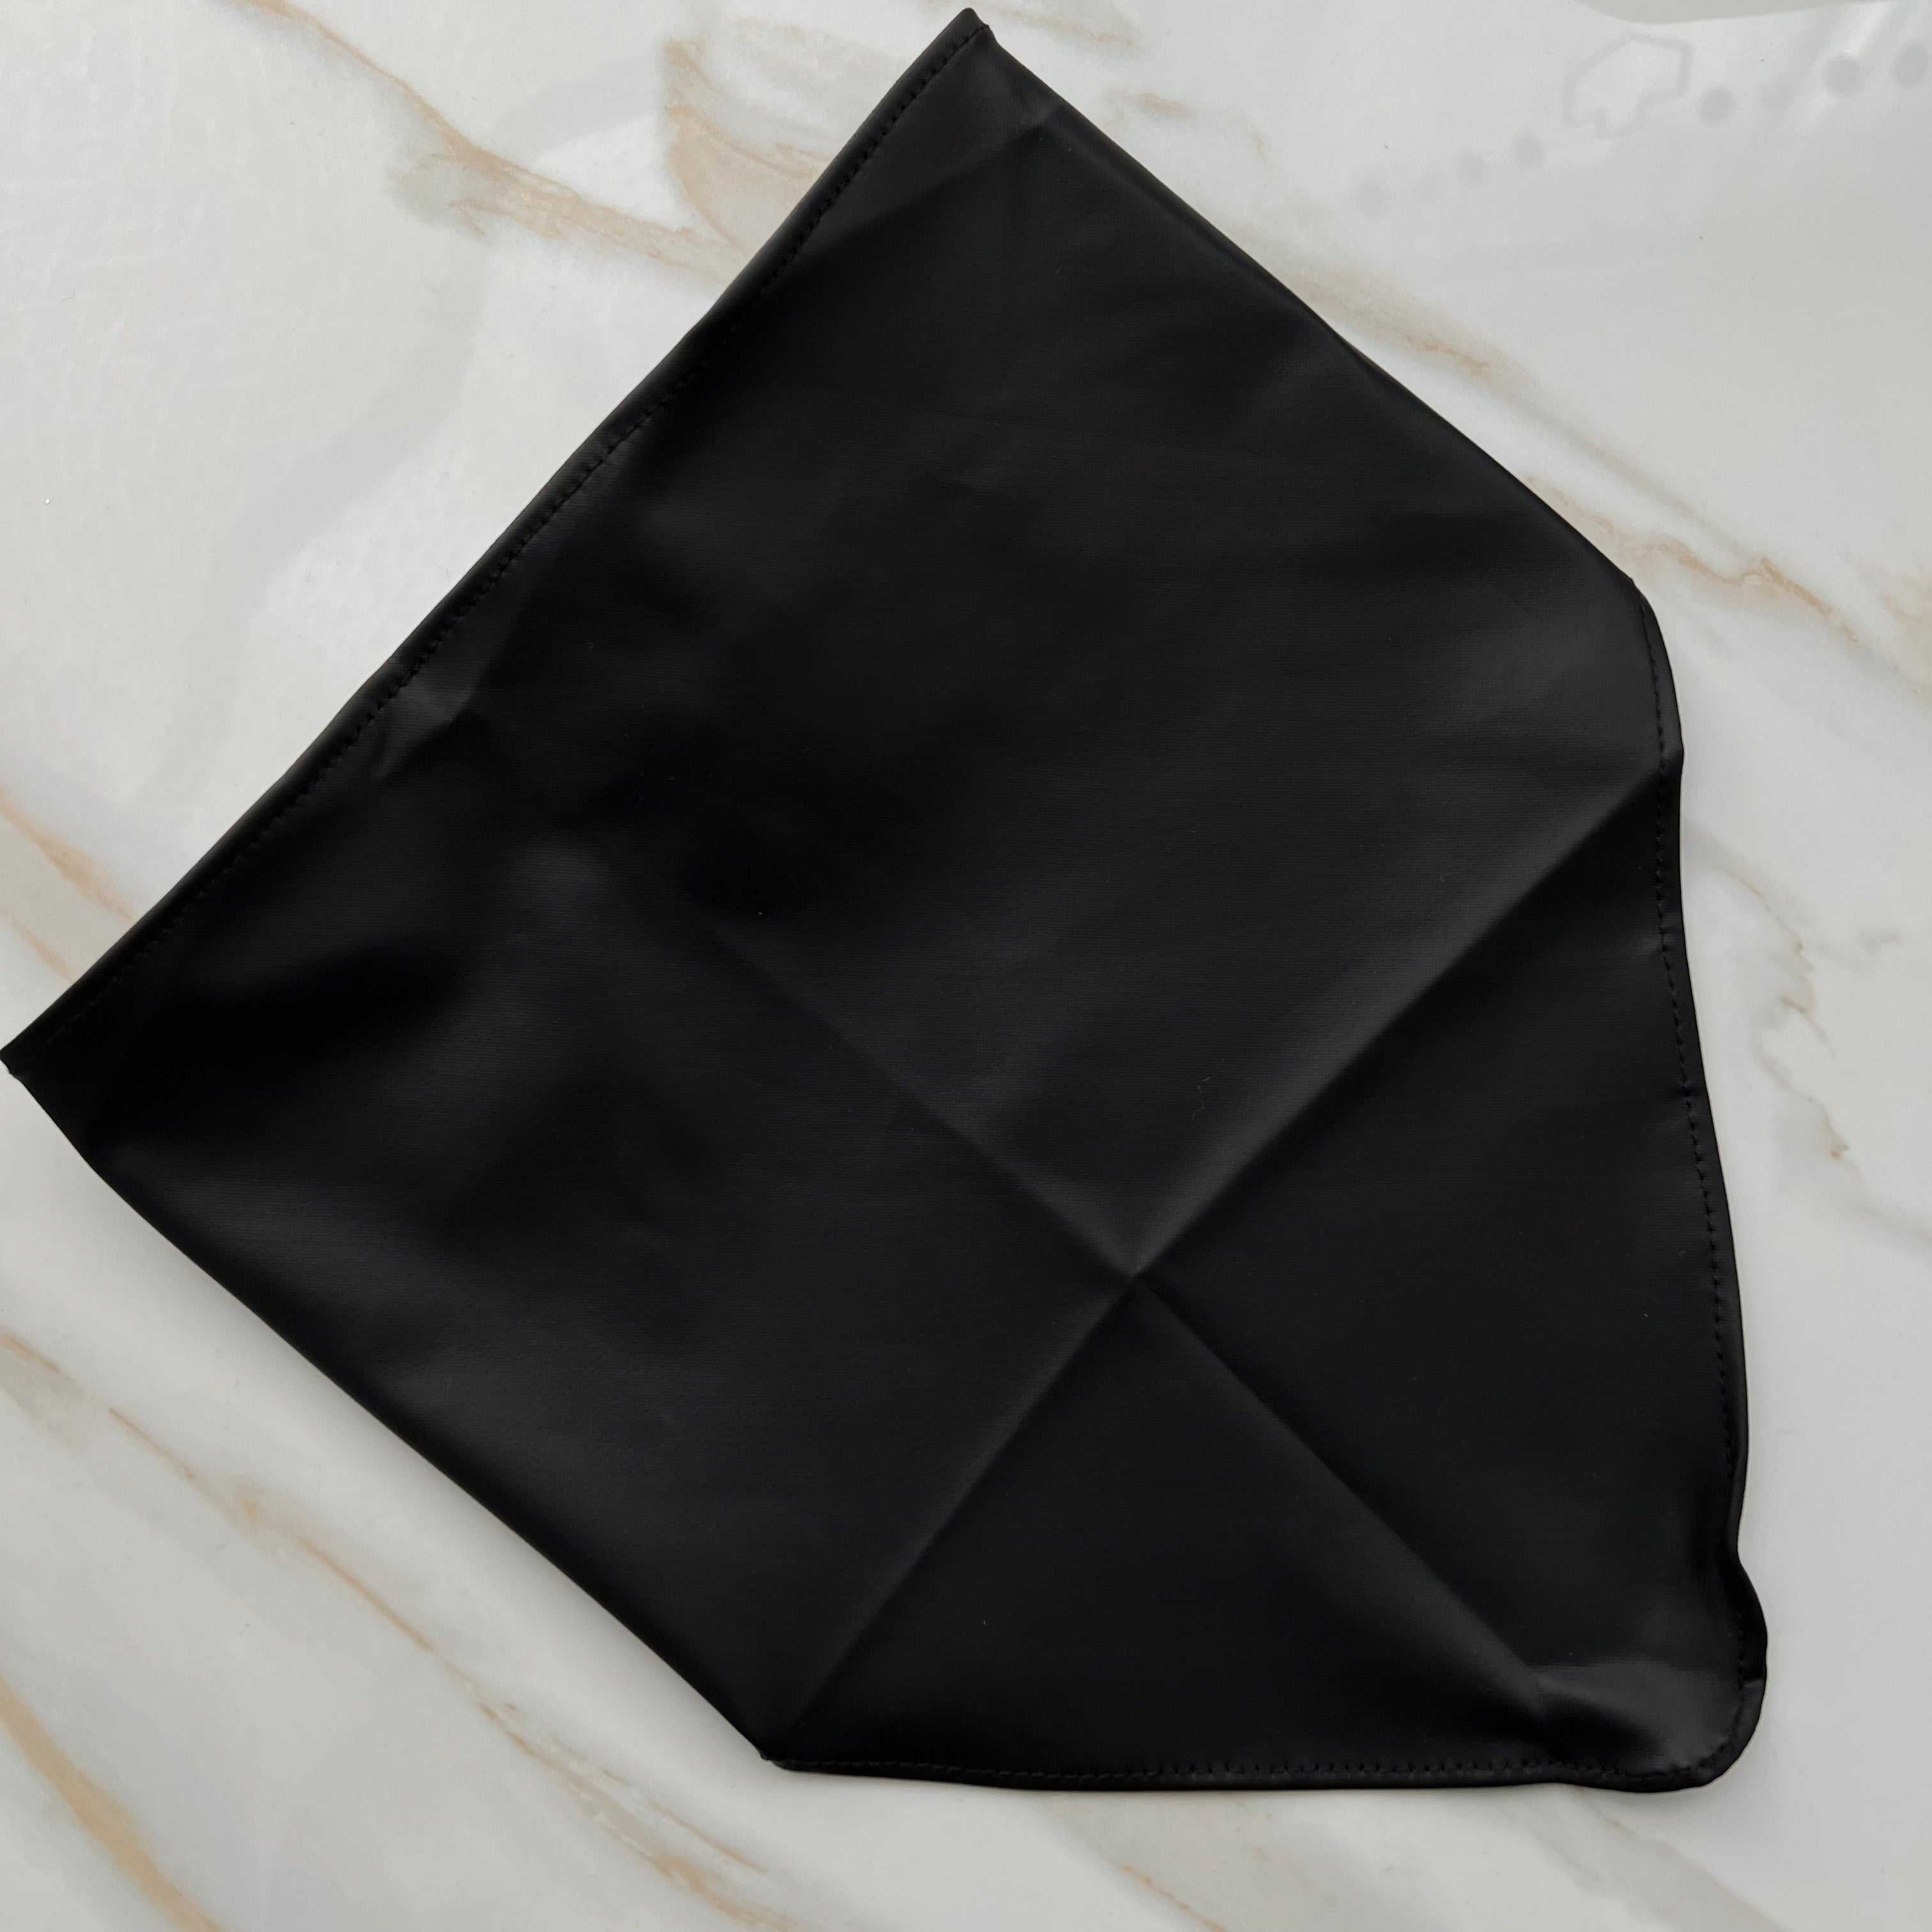 Toby X Valeri Black Leather Pre-Tied Bandana Scarf